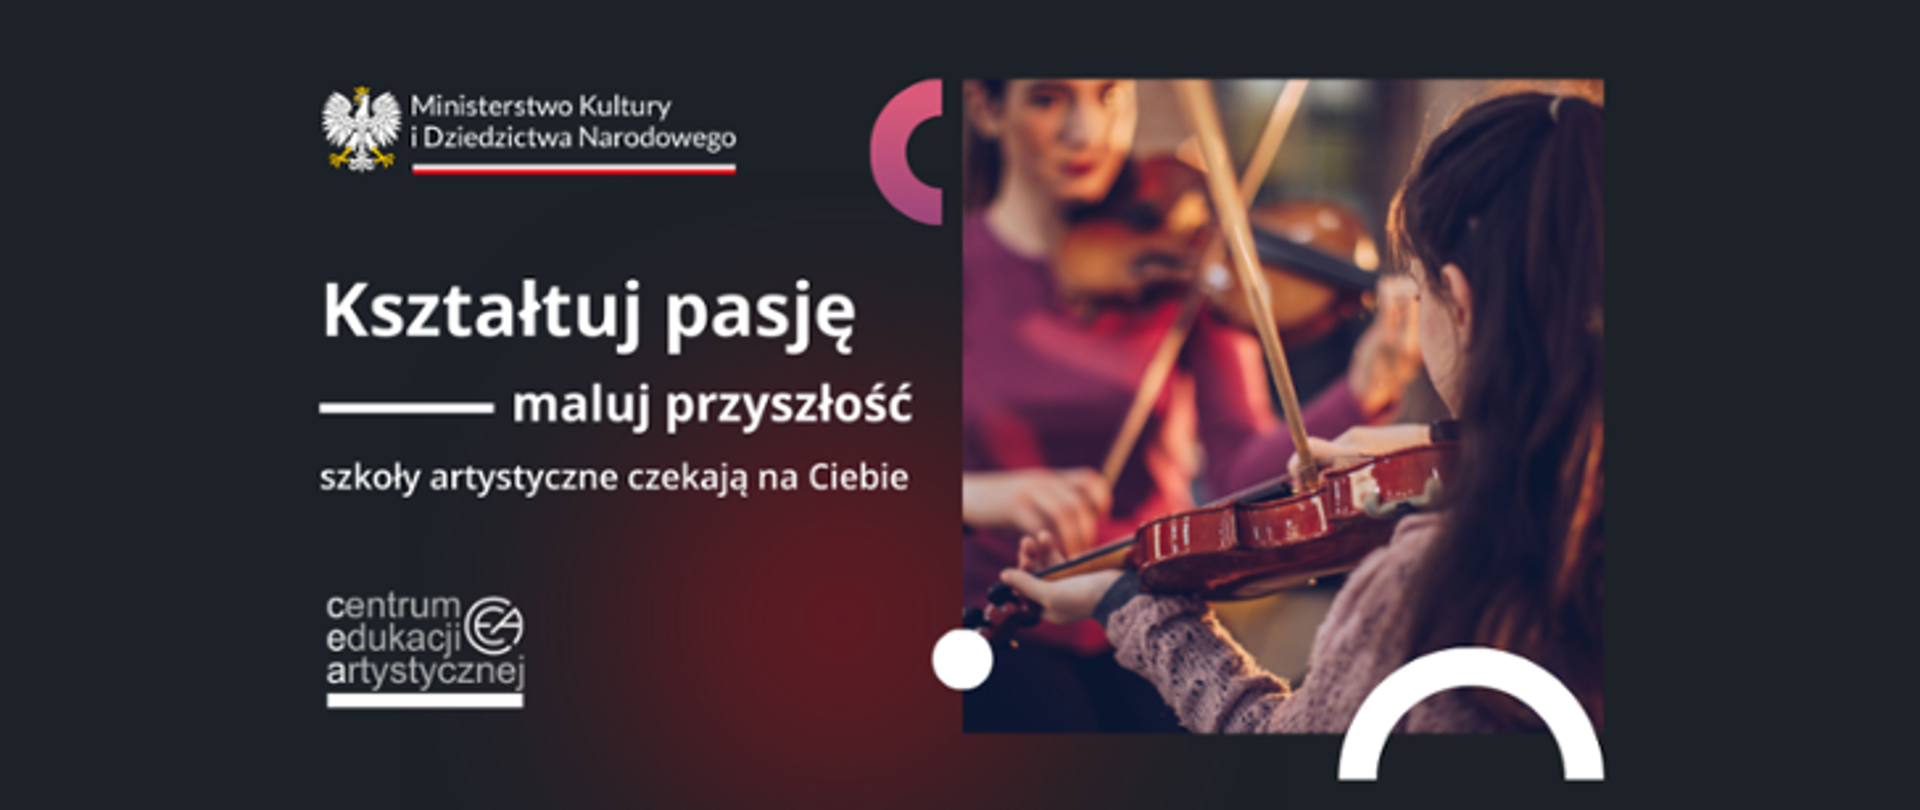 Afisz rekrutacyjny MKiDN - Kształtuj Pasję. Logo MKiDN oraz CEA. Zdjęcie uczennic grających na skrzypcach.